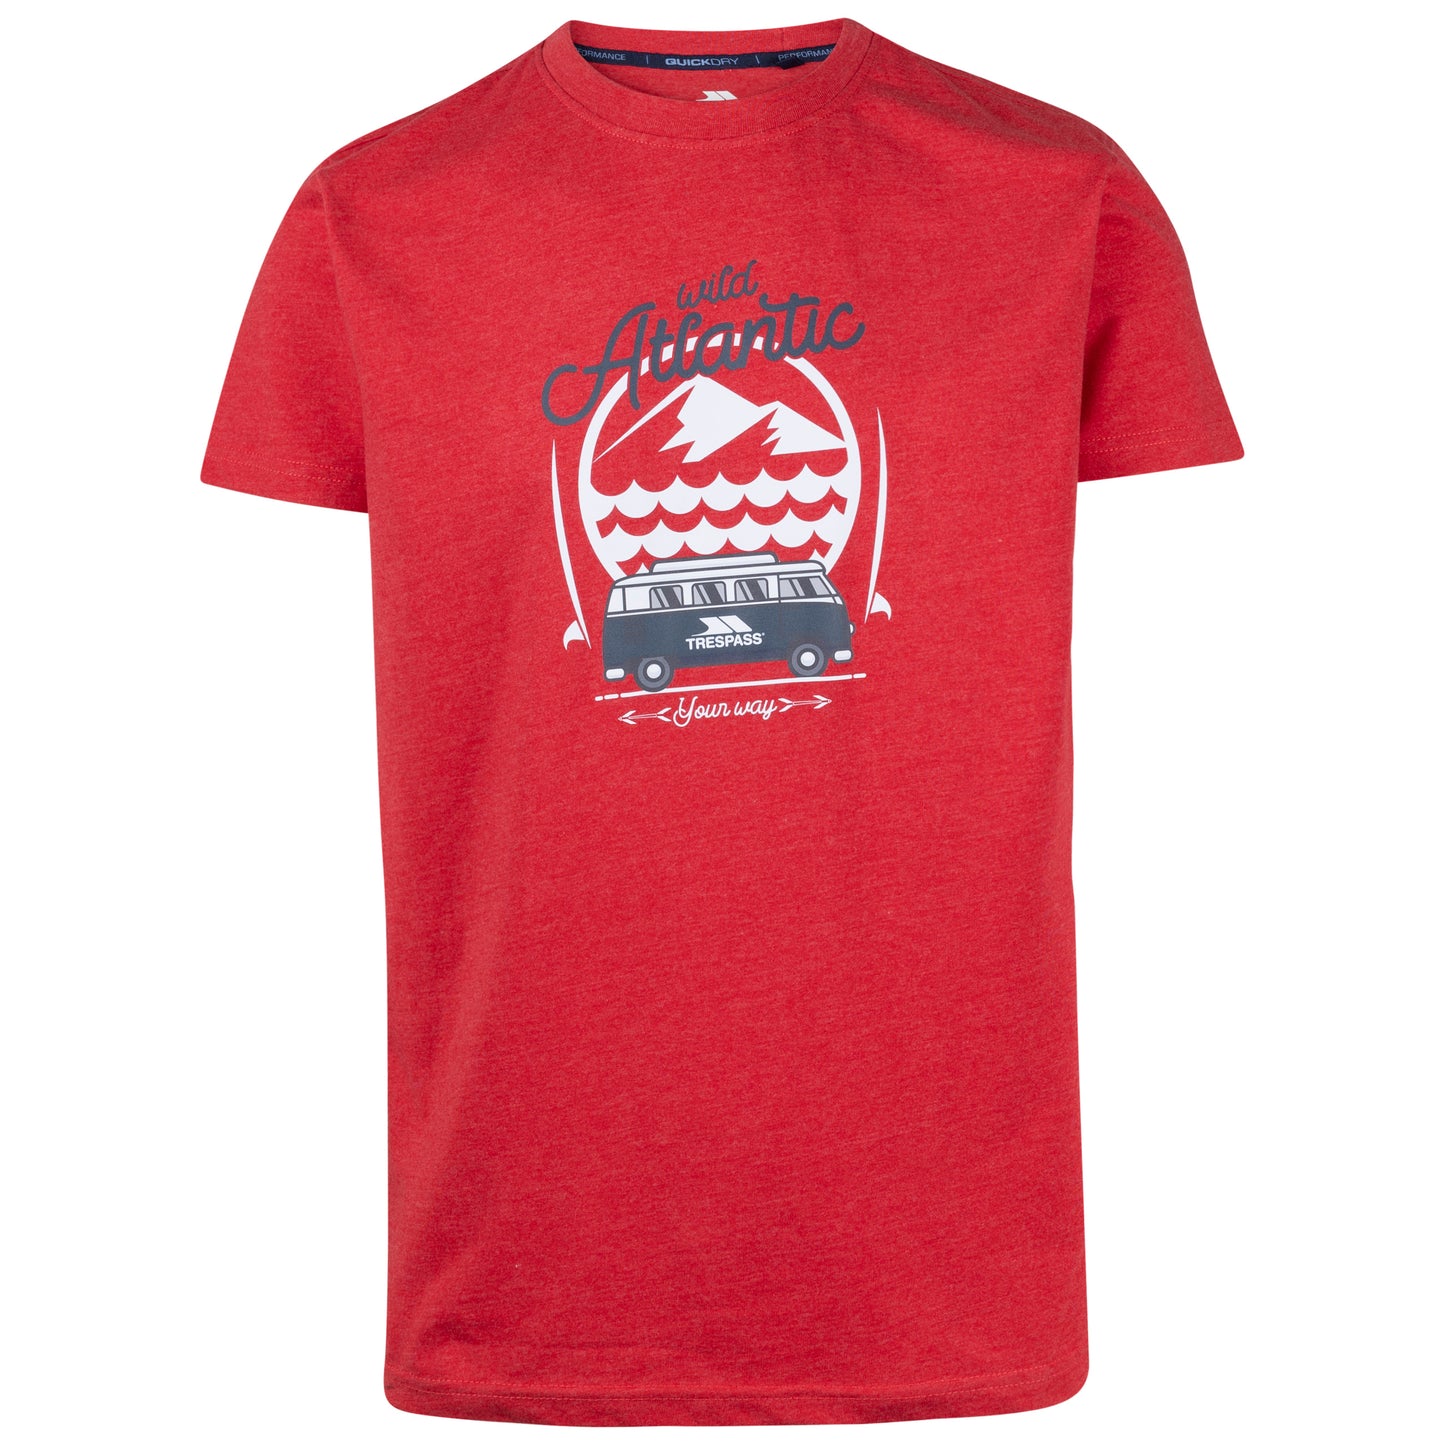 Sarlake Men's Atlantic Print T-Shirt in Red